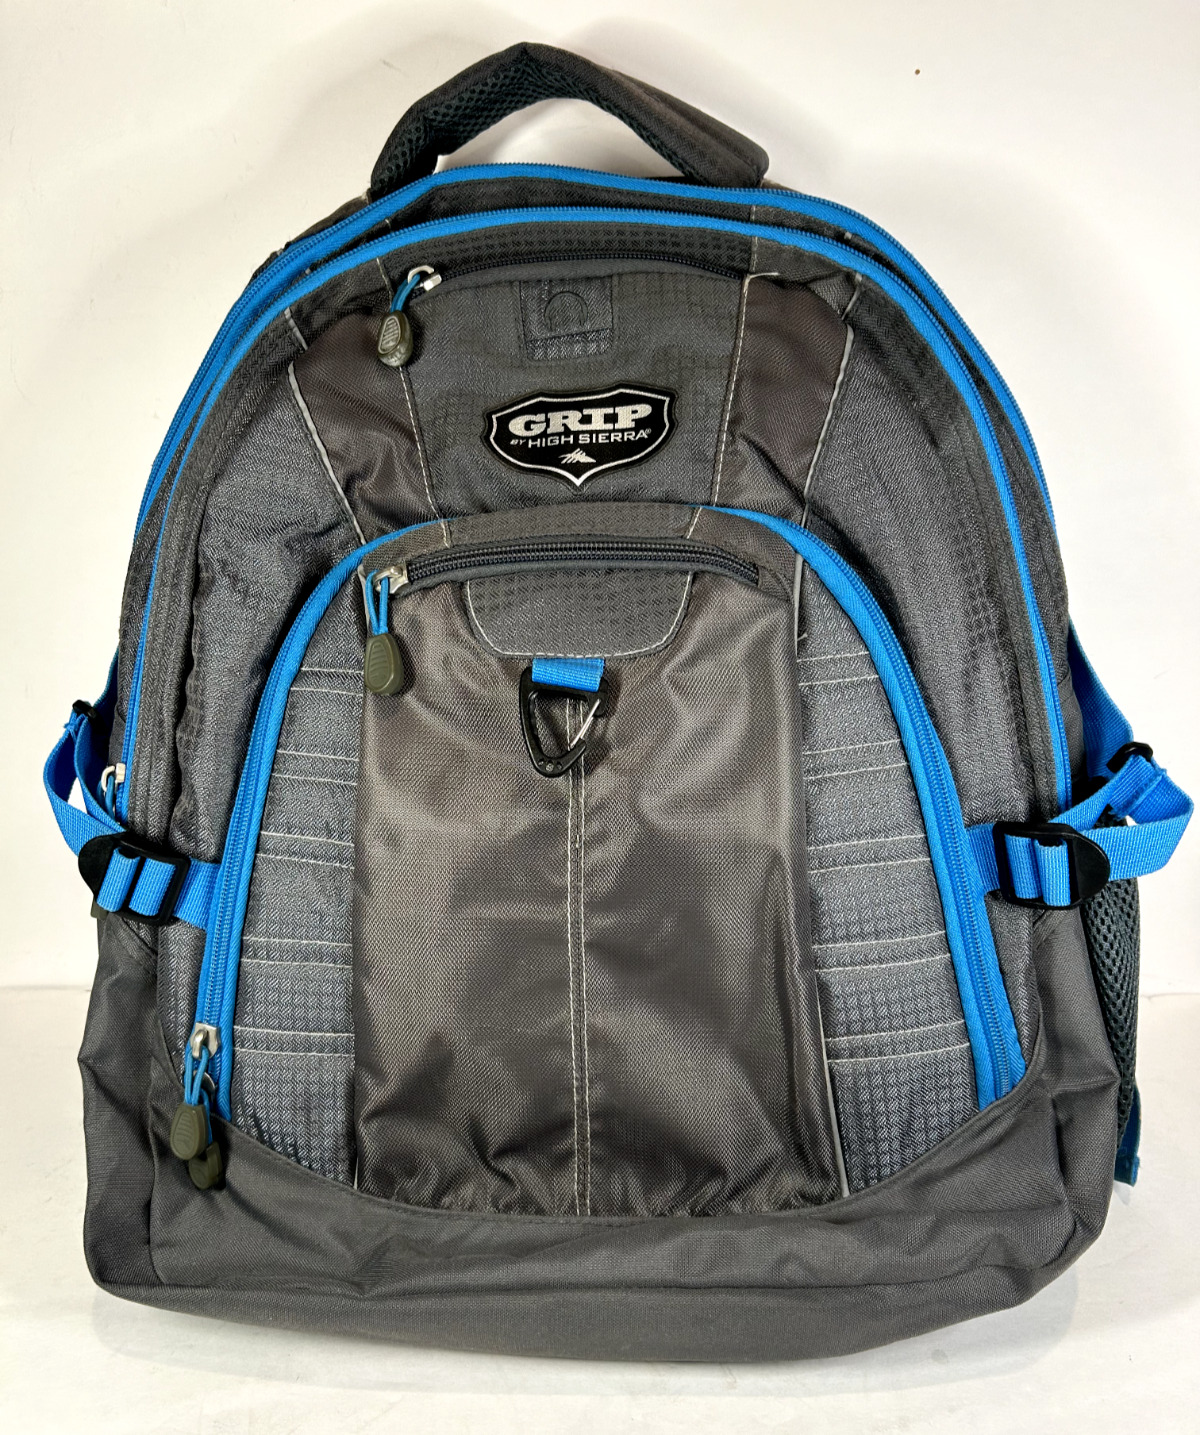 Grip Backpack by High Sierra Grey Elite Laptop padded